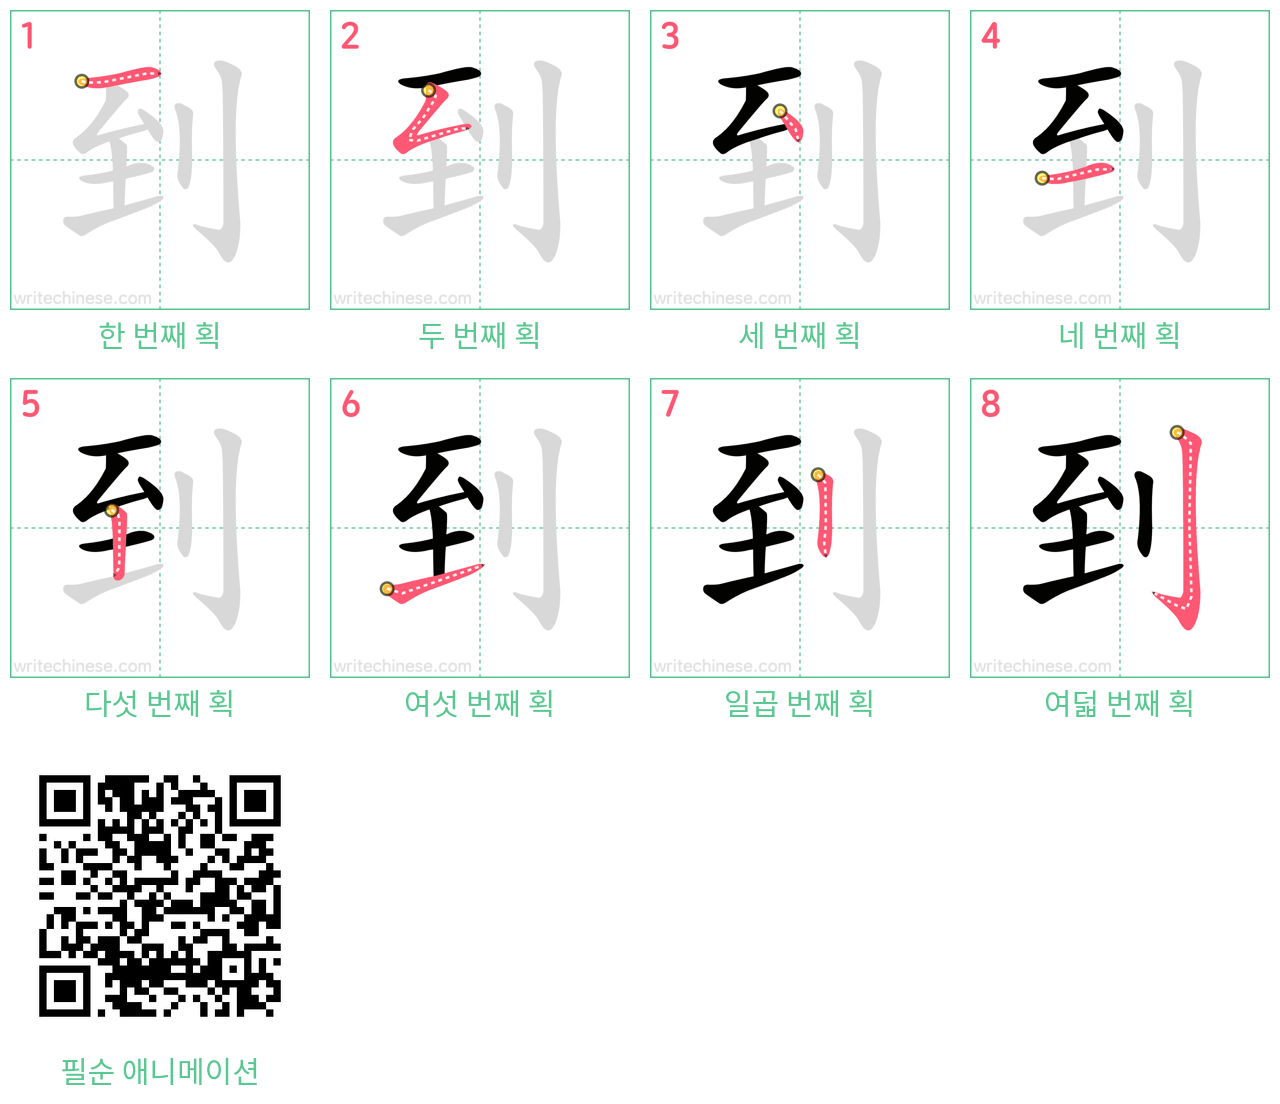 到 step-by-step stroke order diagrams